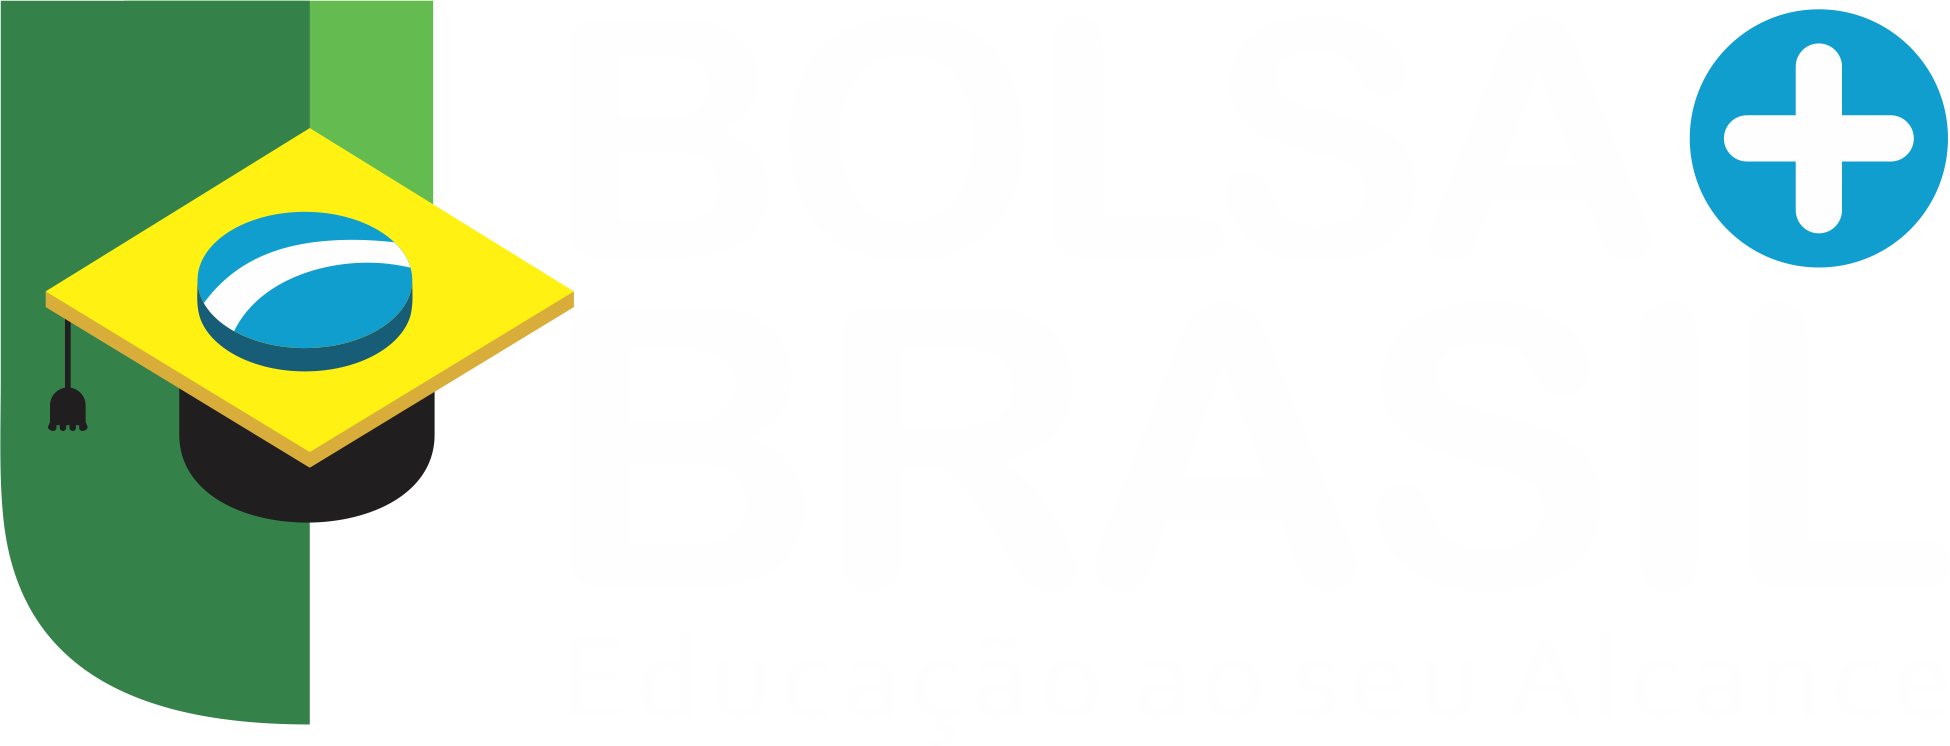 Blog – Bolsa Mais Brasil